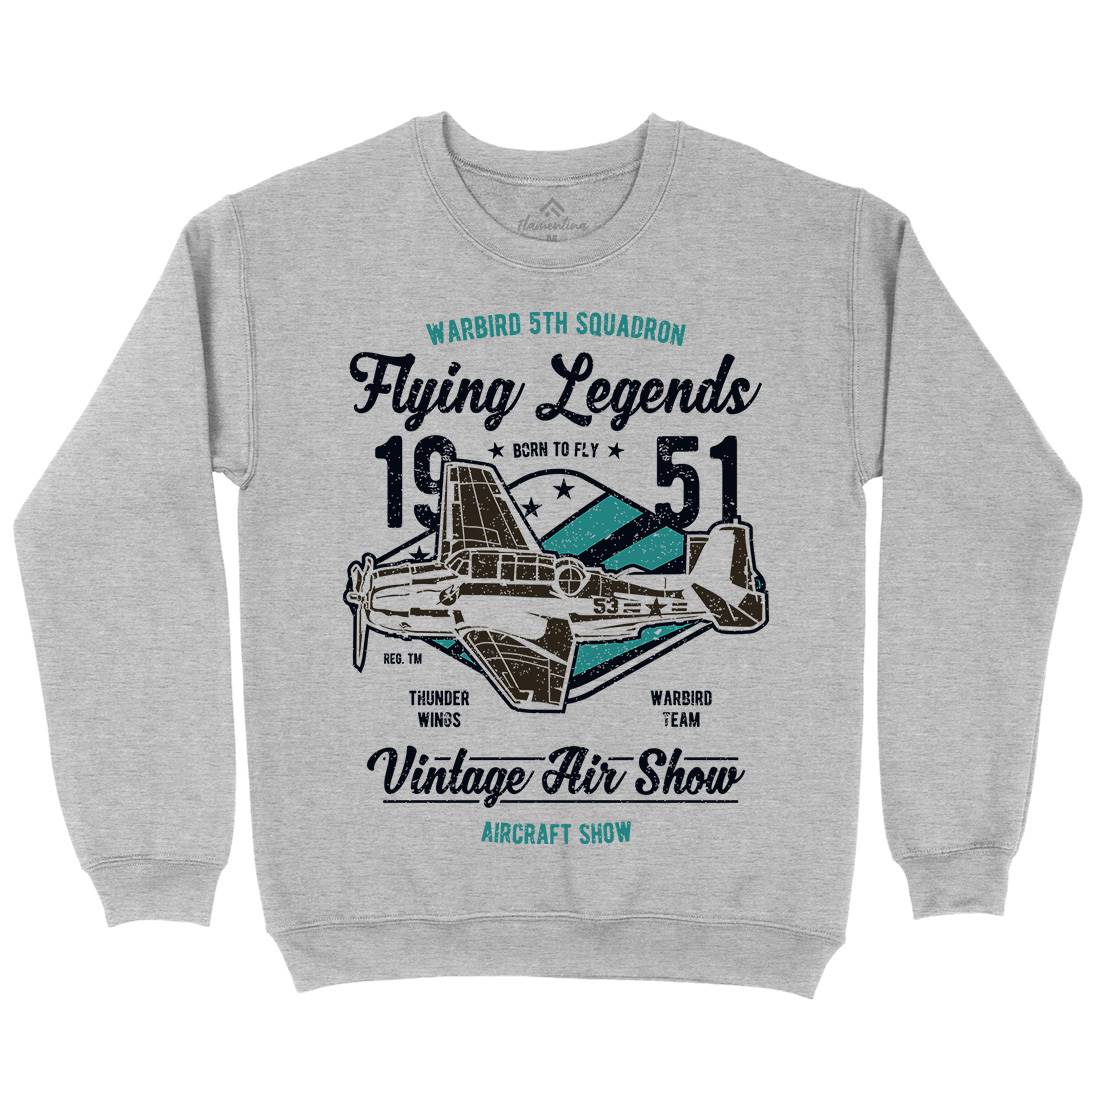 Flying Legends Kids Crew Neck Sweatshirt Vehicles A664